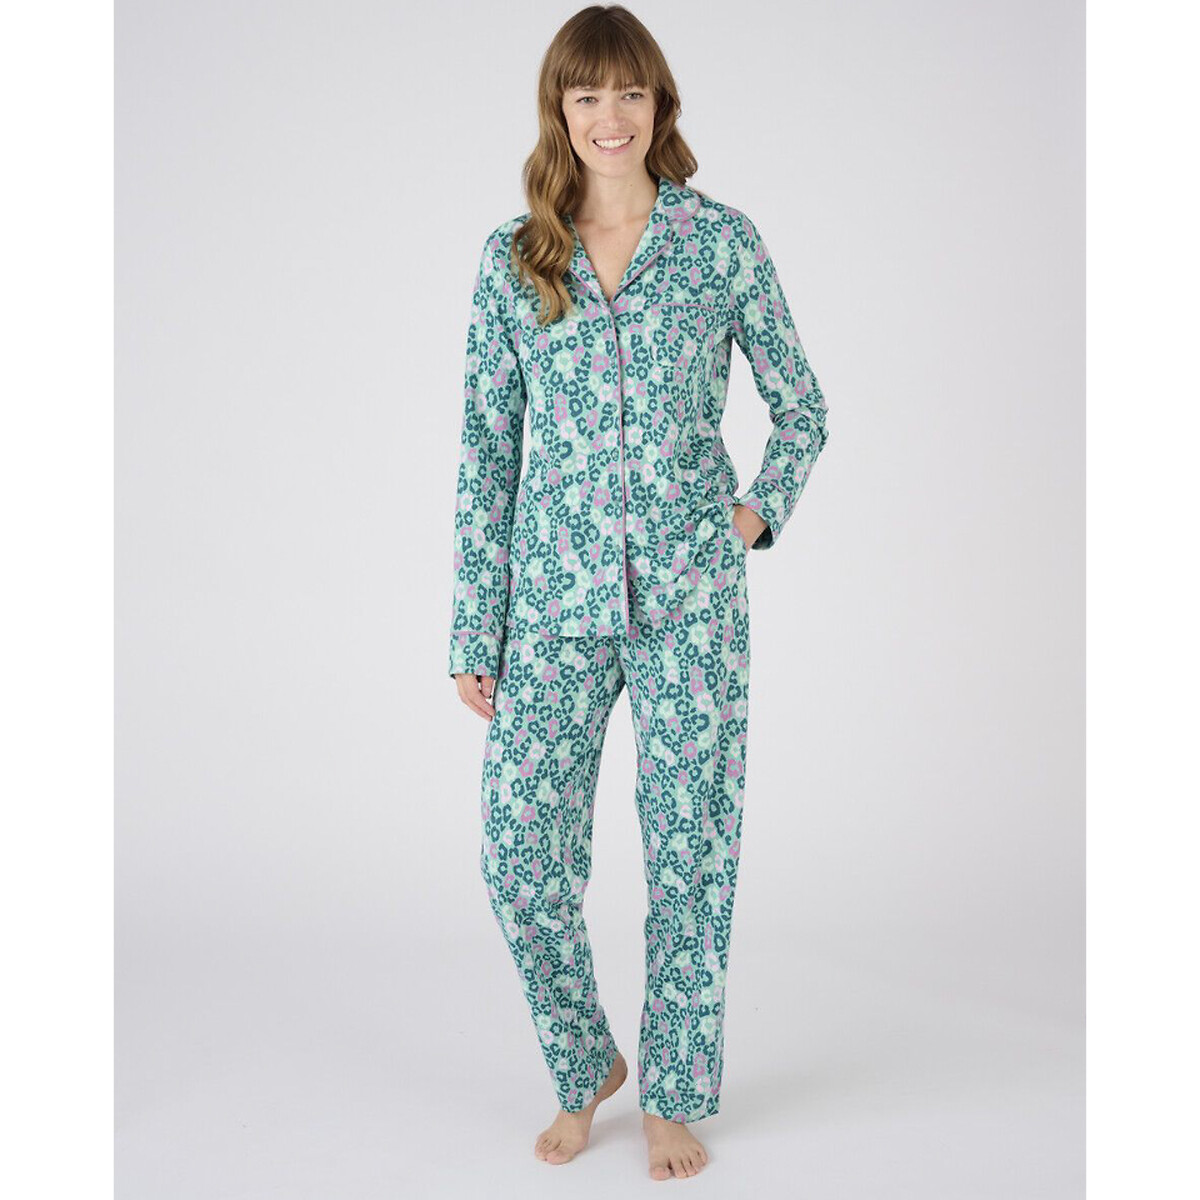 Комплект пижамный, Thermolactyl La Redoute L разноцветный комплект пижамный с длинными рукавами la redoute xl синий